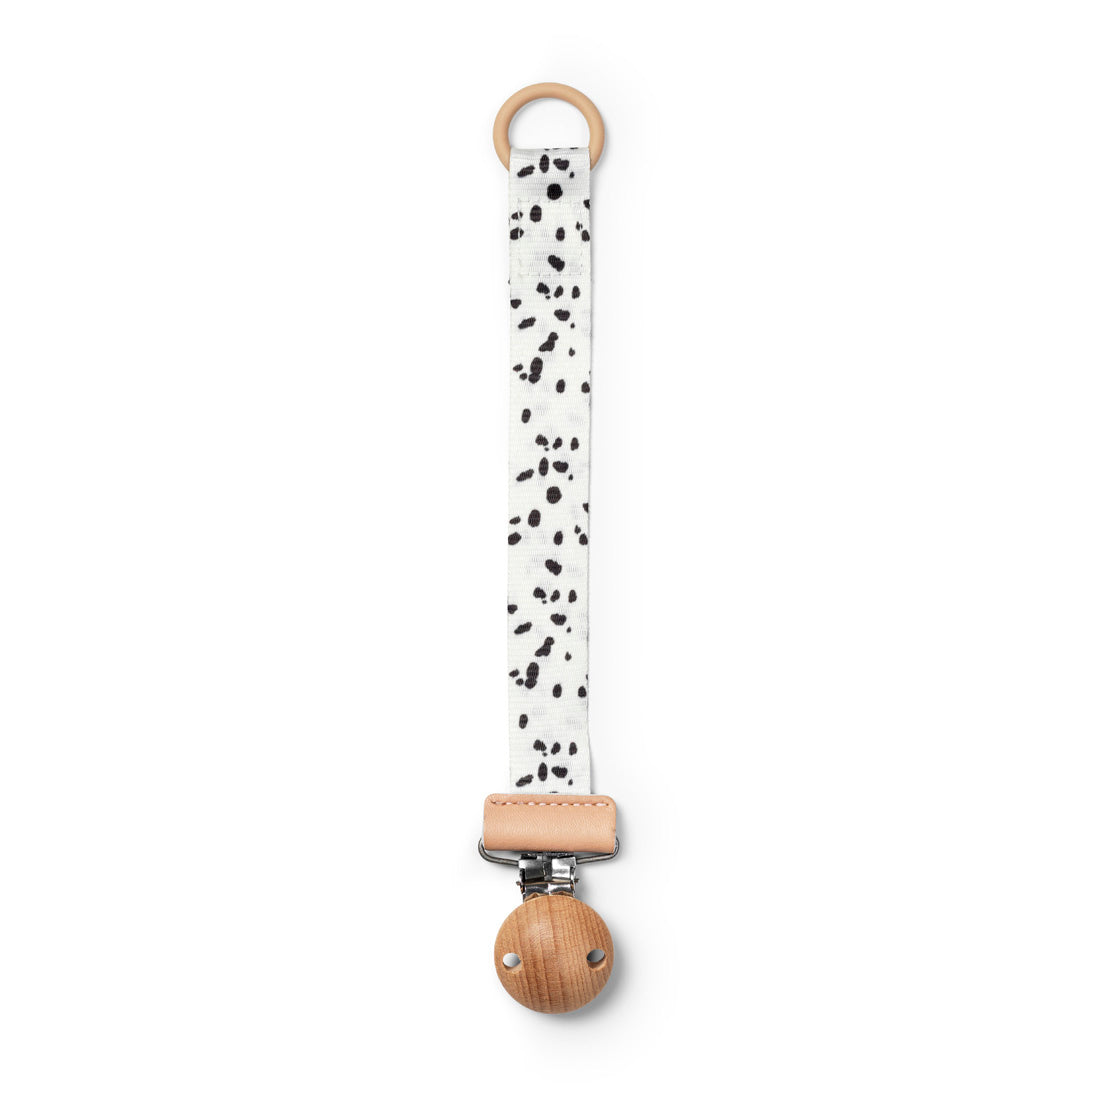 Zawieszka do smoczka Elodie Details Dalmatian Dots z drewnem i silikonowym pierścieniem, elegancki lancuszek do smoczka.